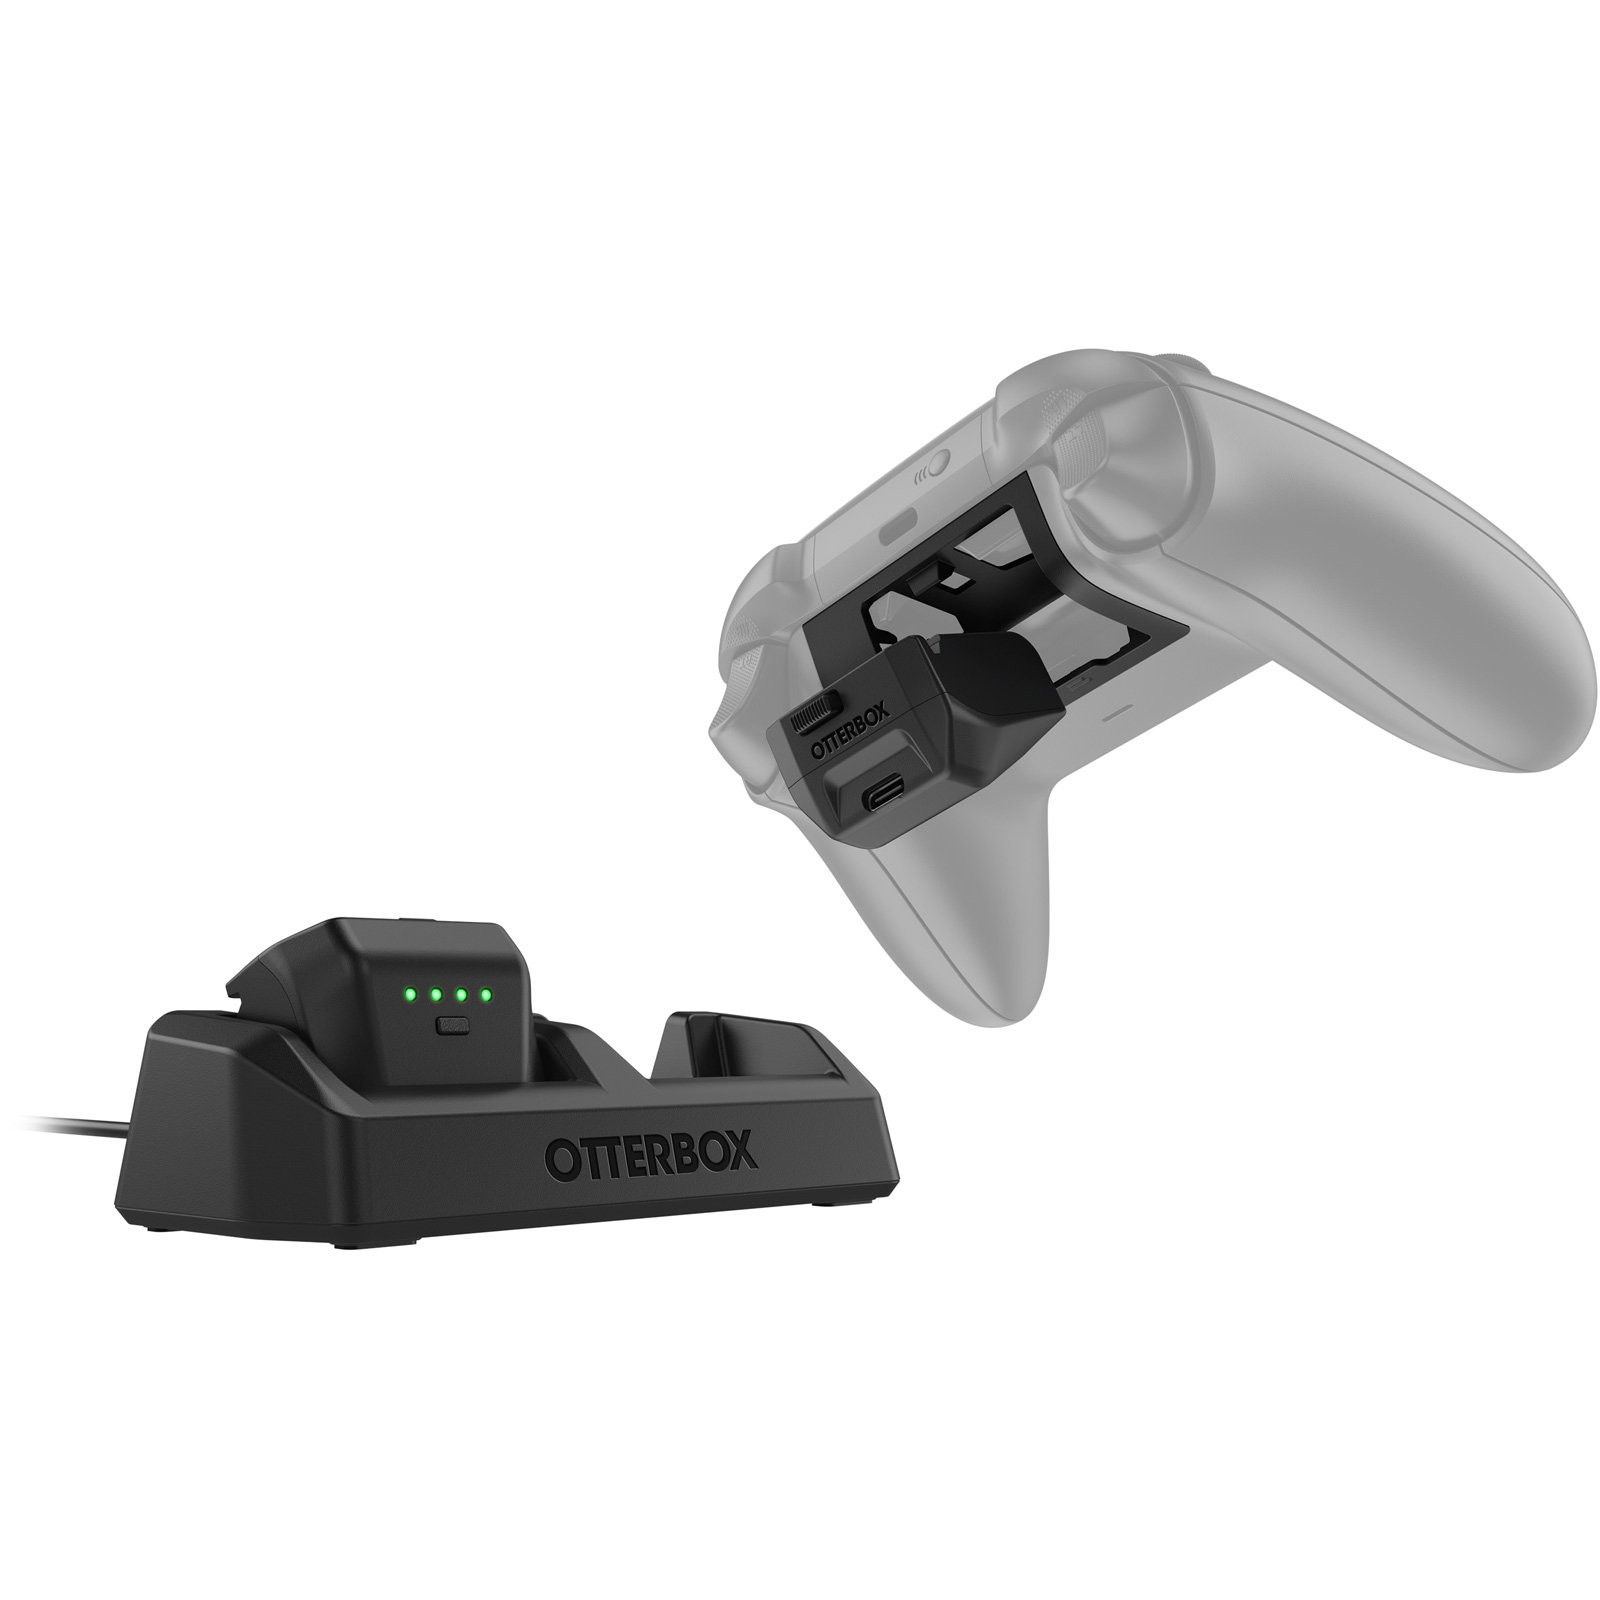 Generic Câble USB pour Manette Xbox 360